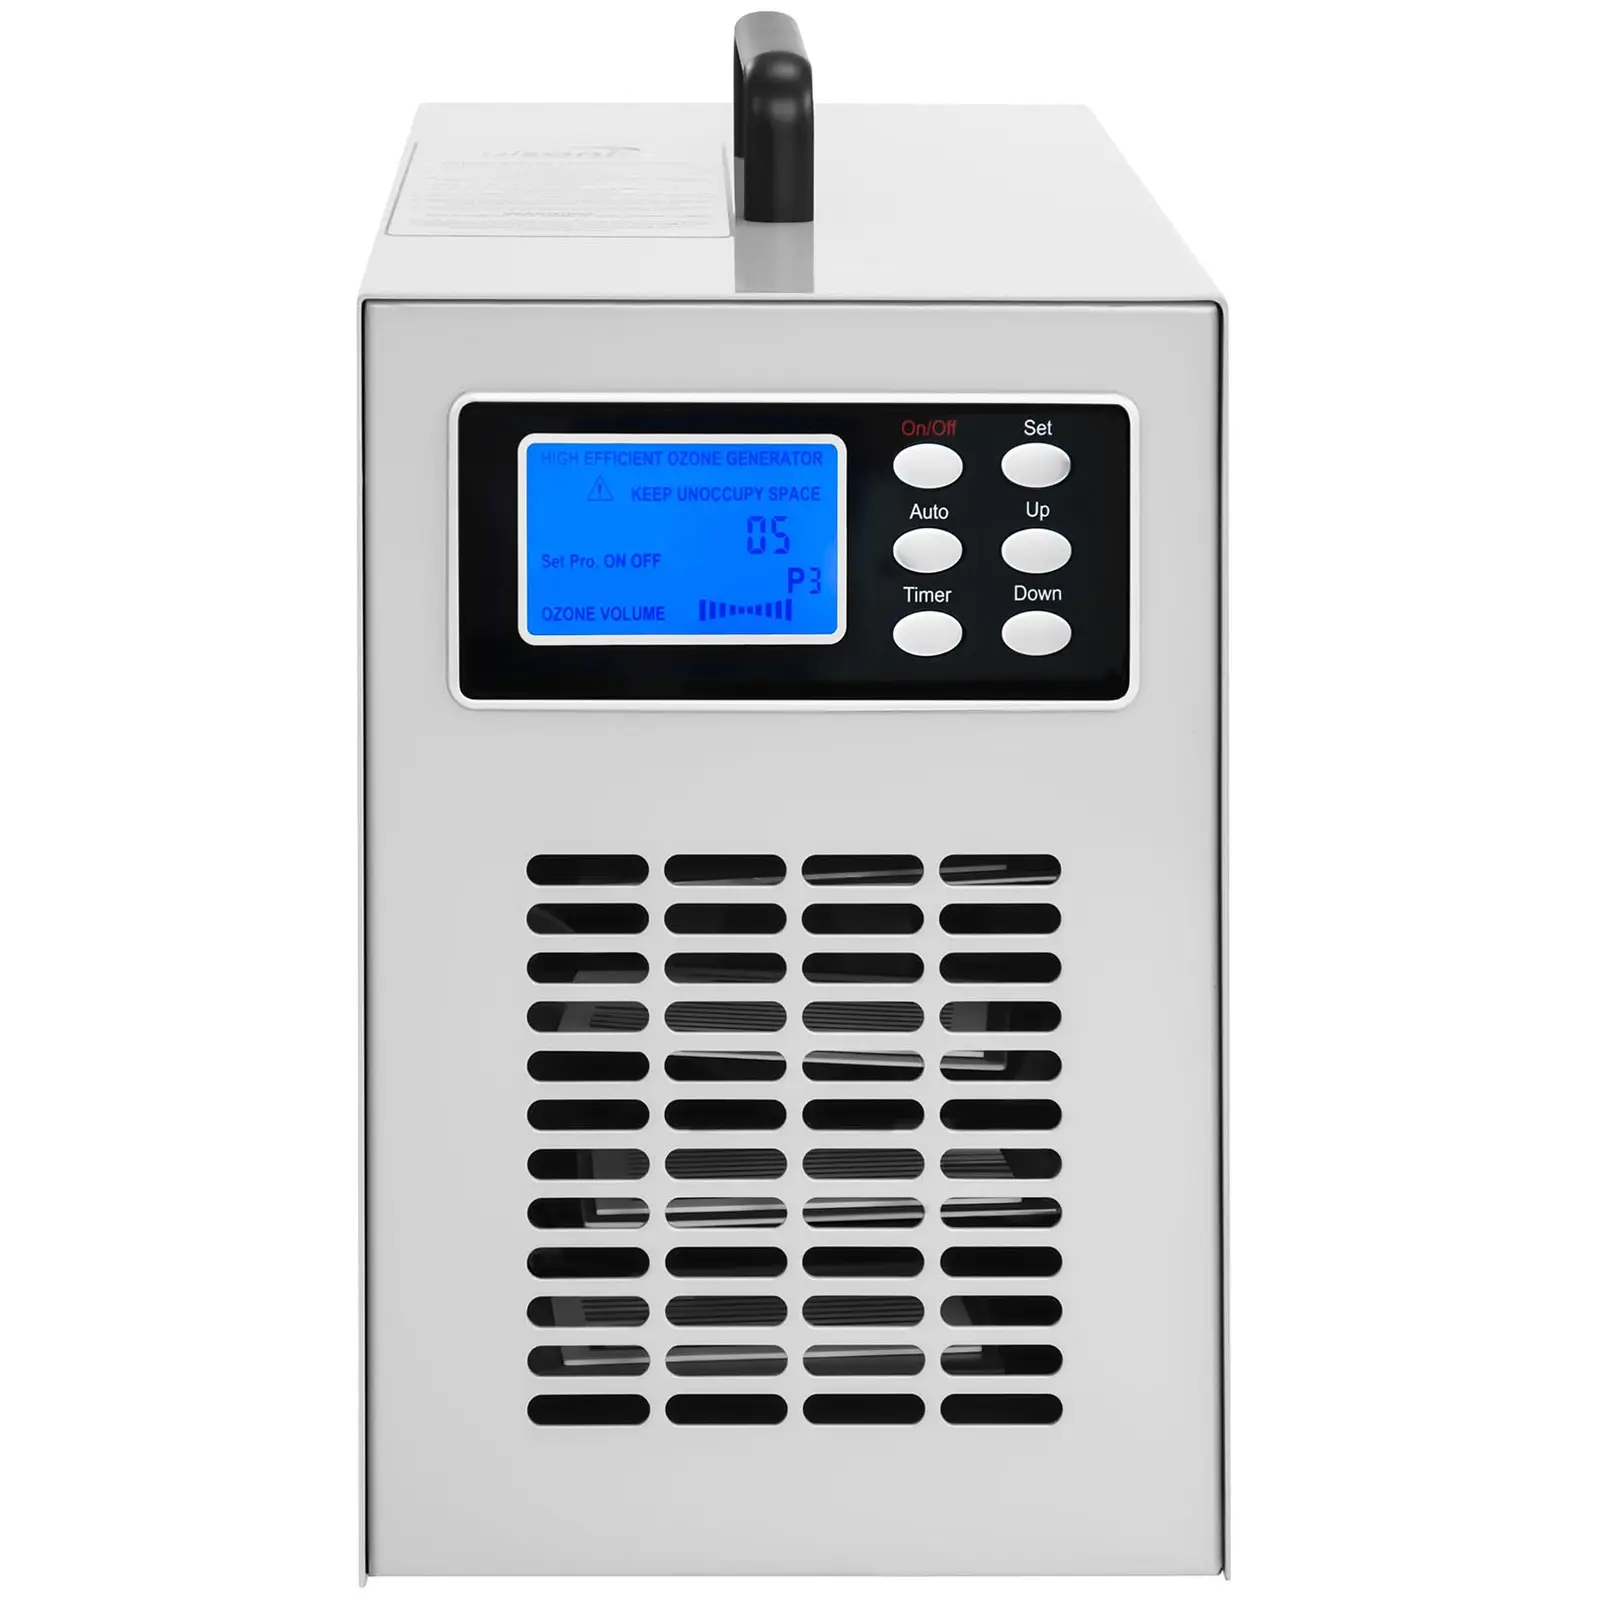 Ozongenerator - 15.000 mg/h - 160 Watt- digital